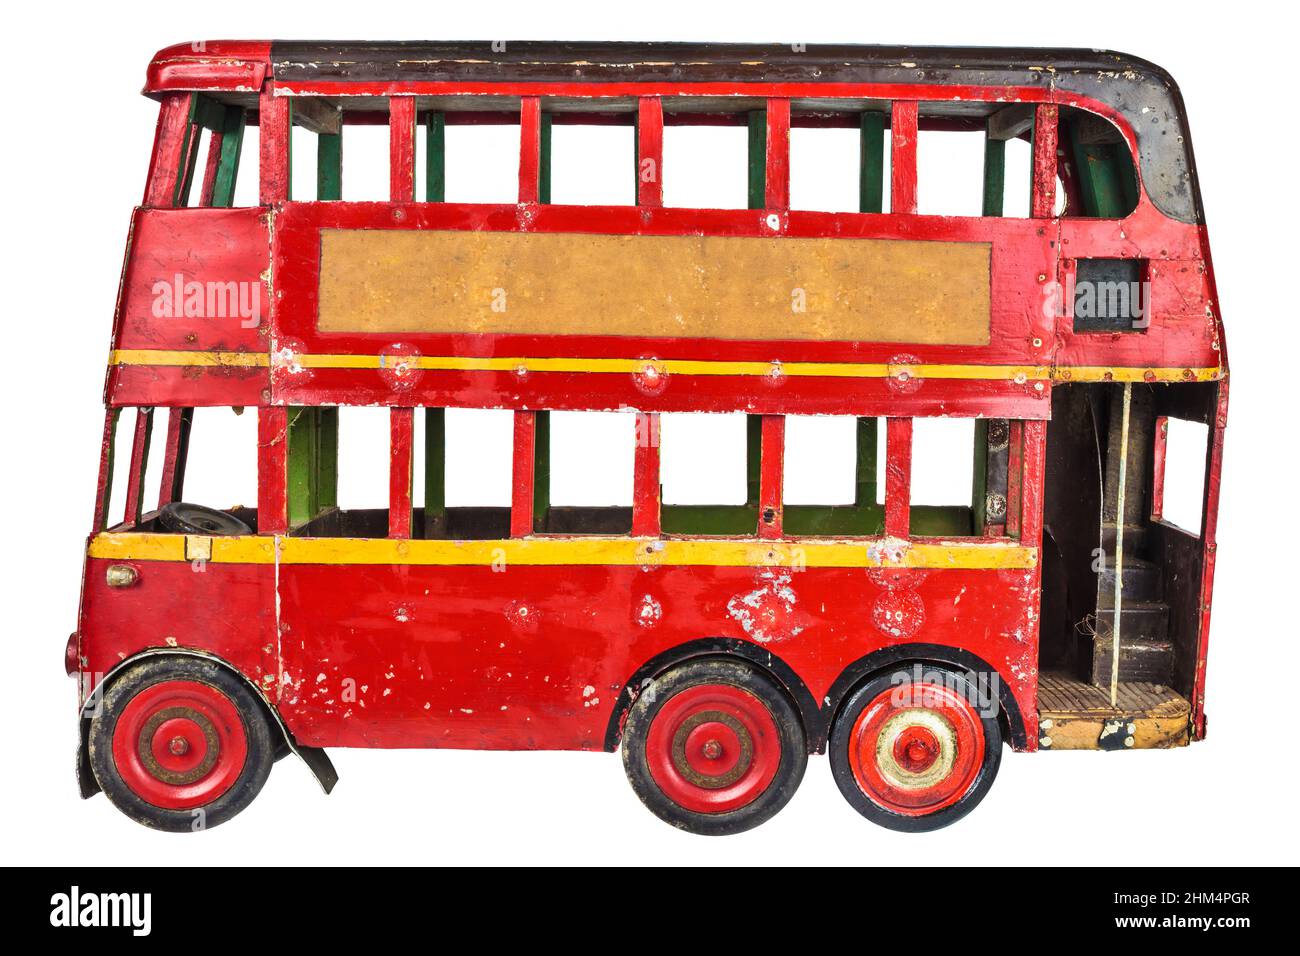 Juguete de autobús rojo clásico inglés de Londres aislado sobre un fondo blanco Foto de stock